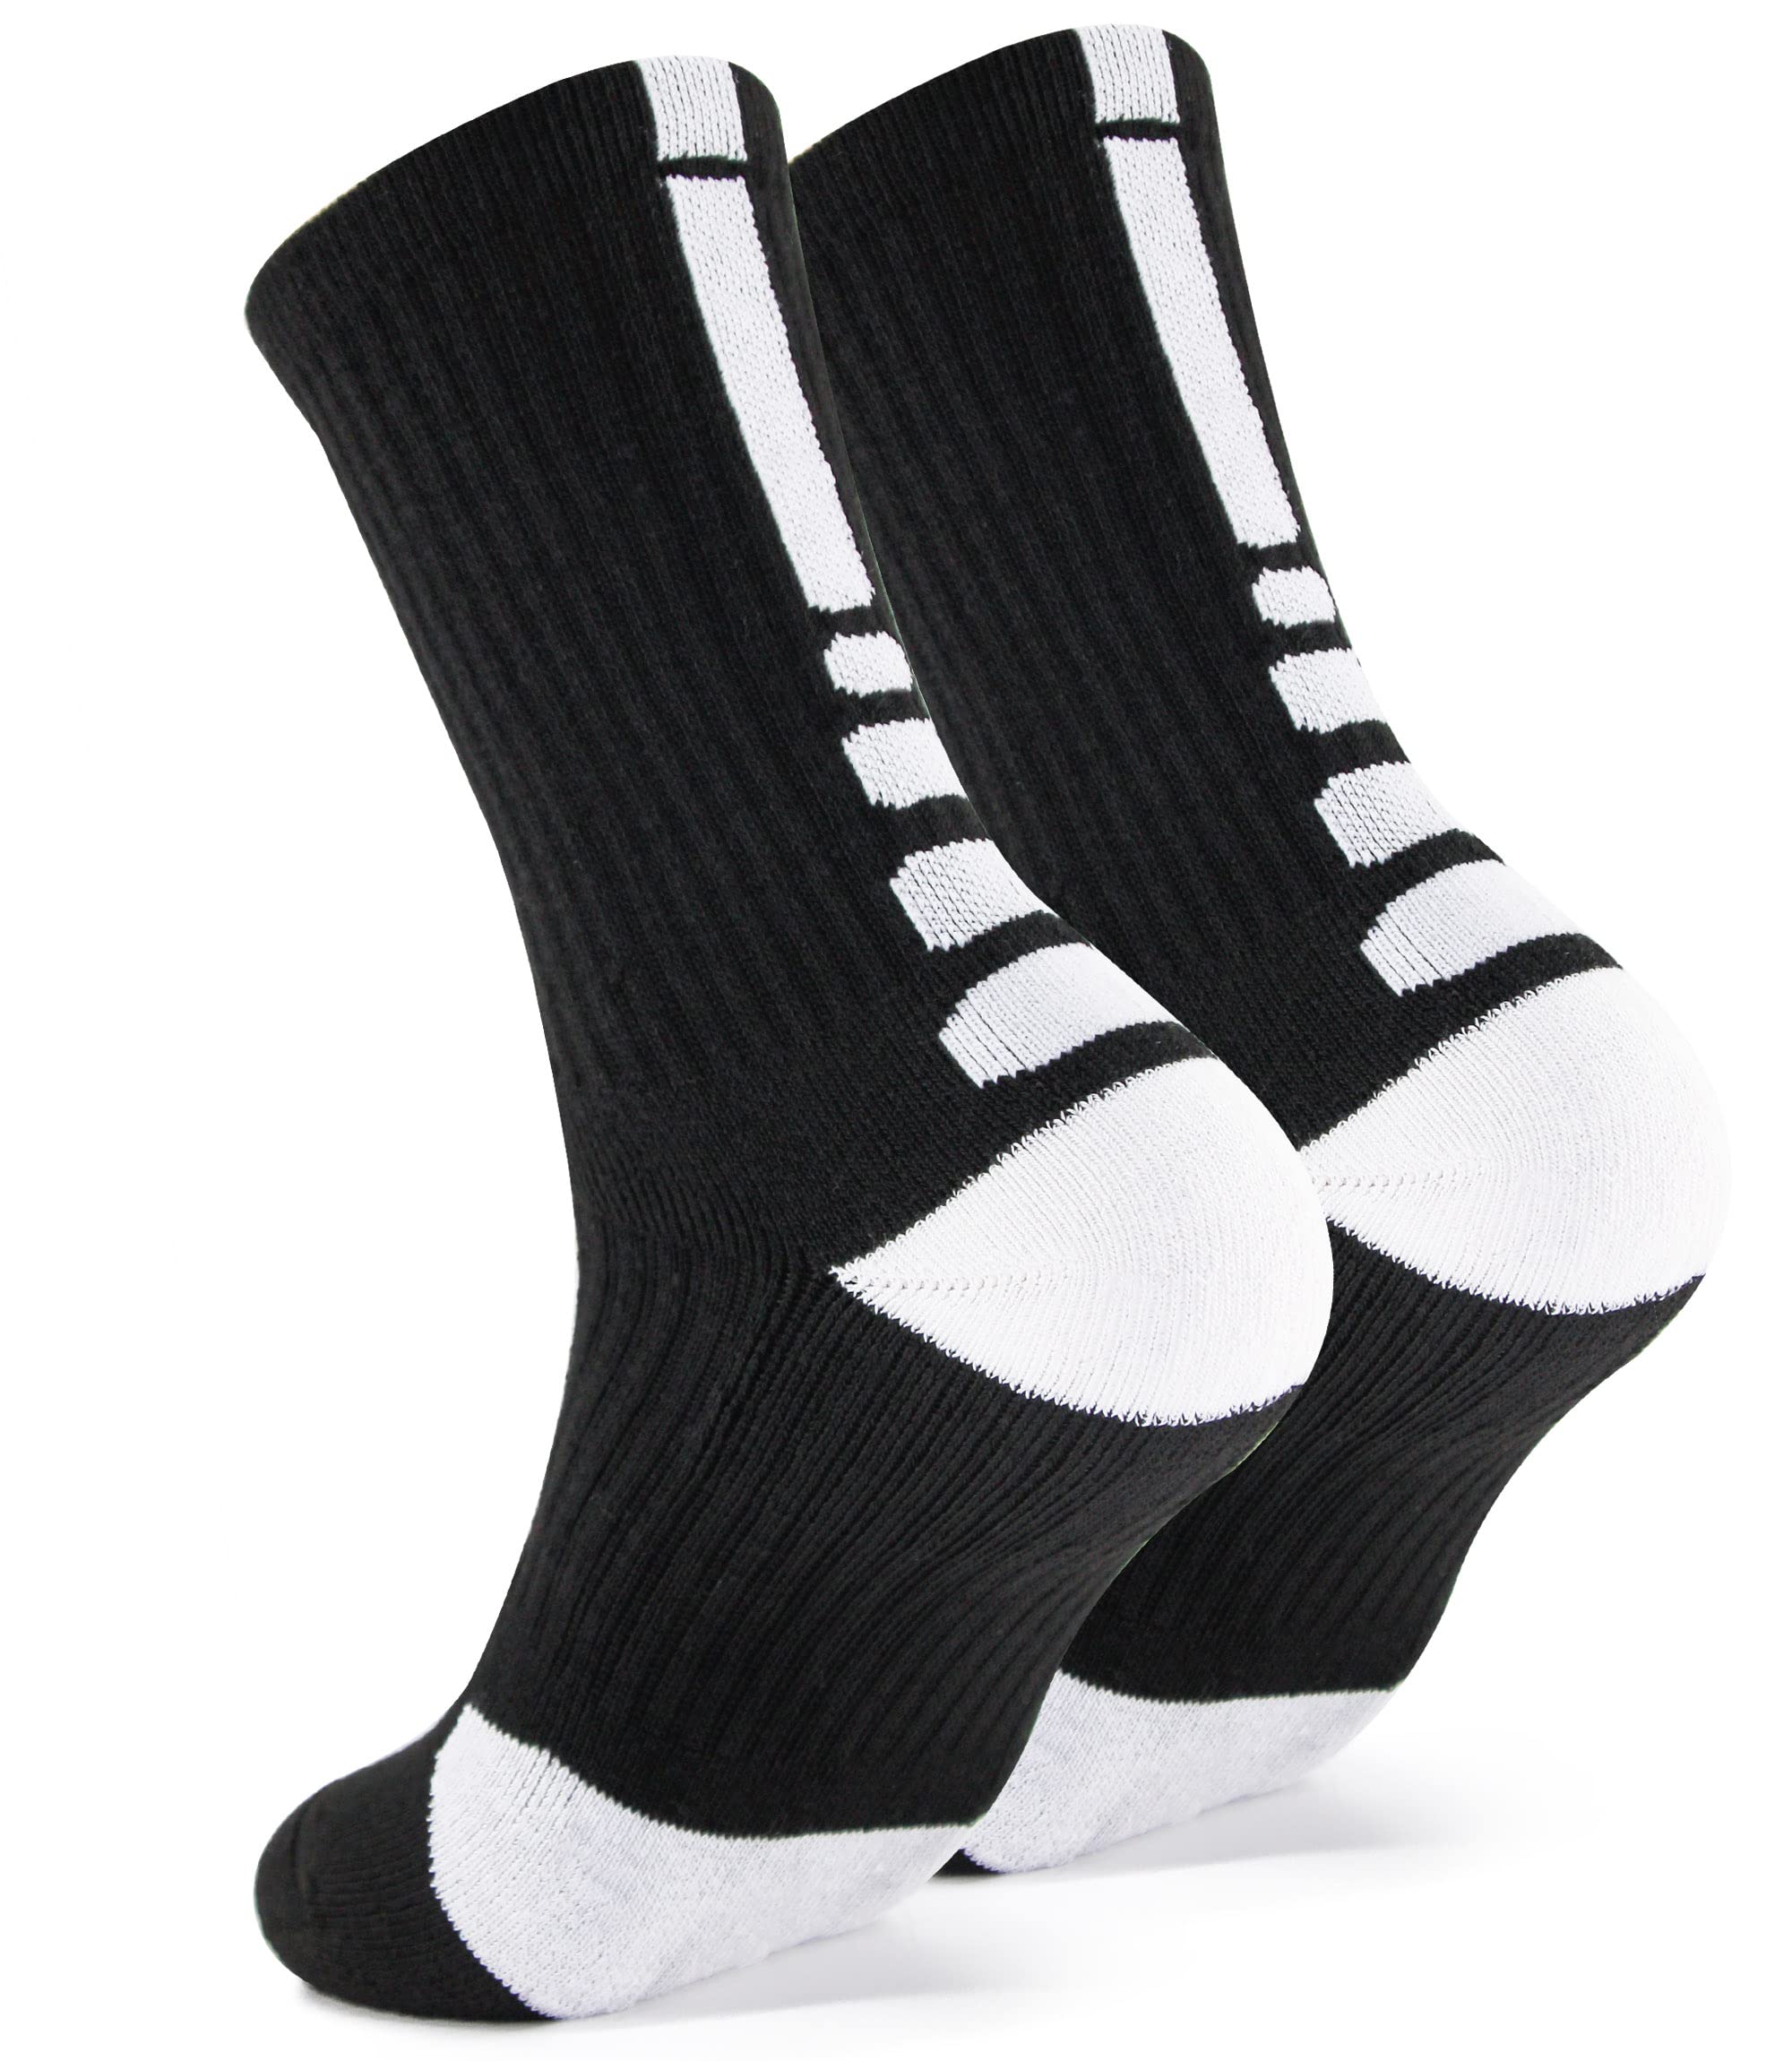 DILIBA Elite Basketball Socks Cushion ​Athletic Crew Socks for Men's Women's Youth Boy